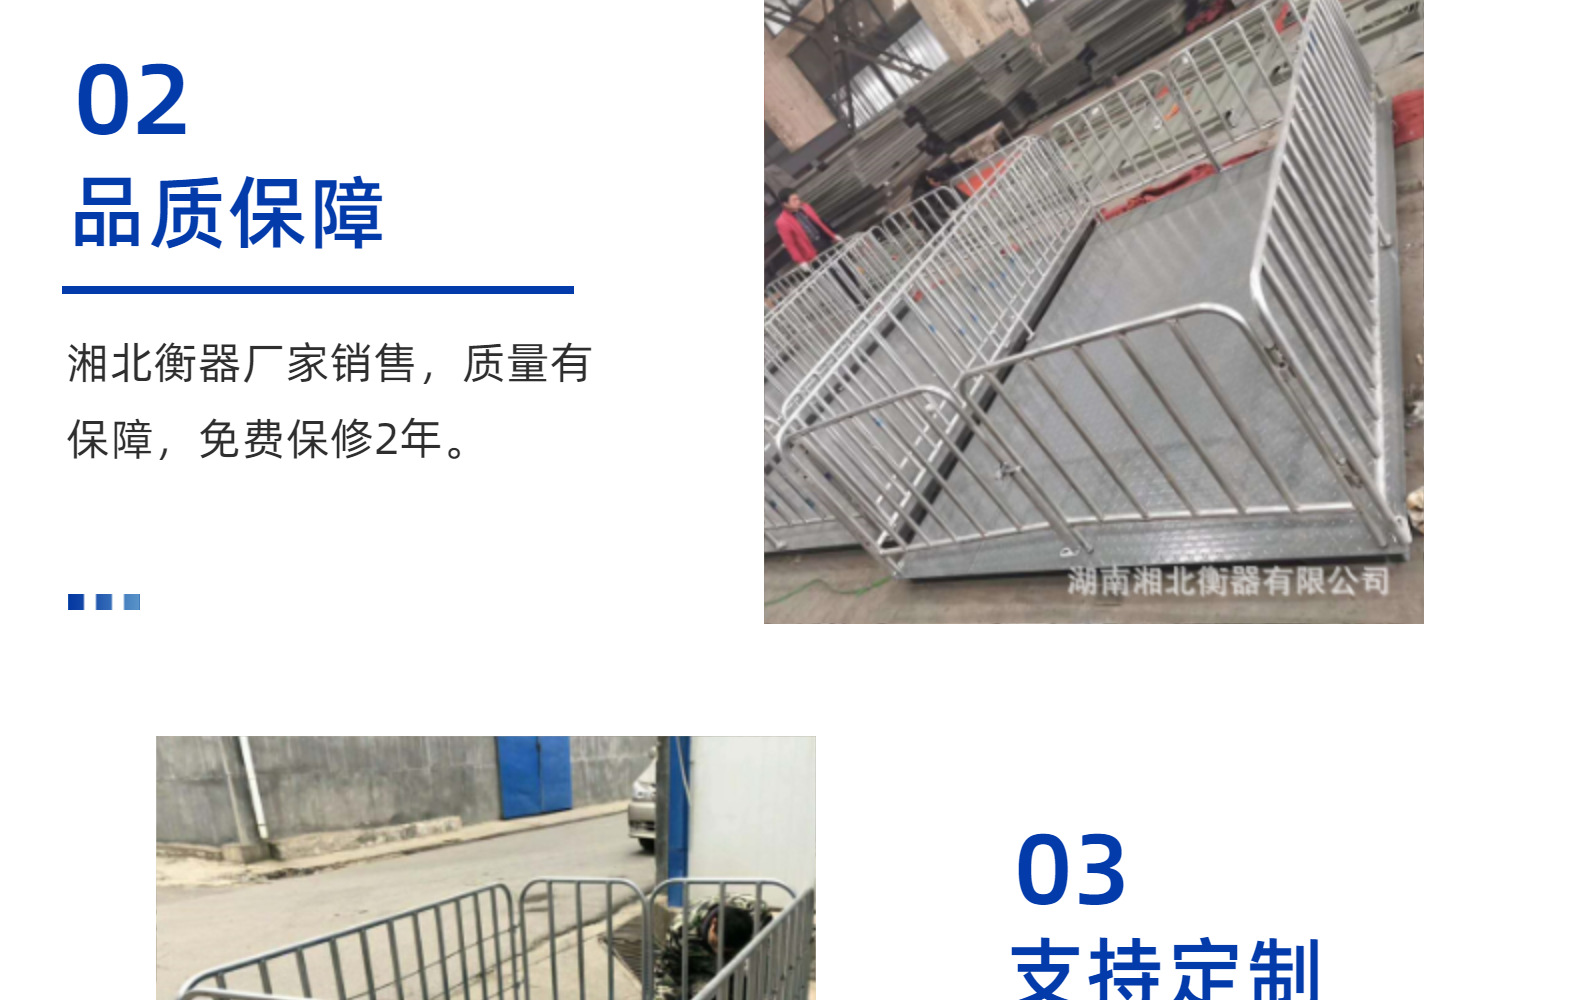 廊坊秤猪地磅笼 1-3吨上海耀华地磅 1.2x1.5米两吨猪笼秤